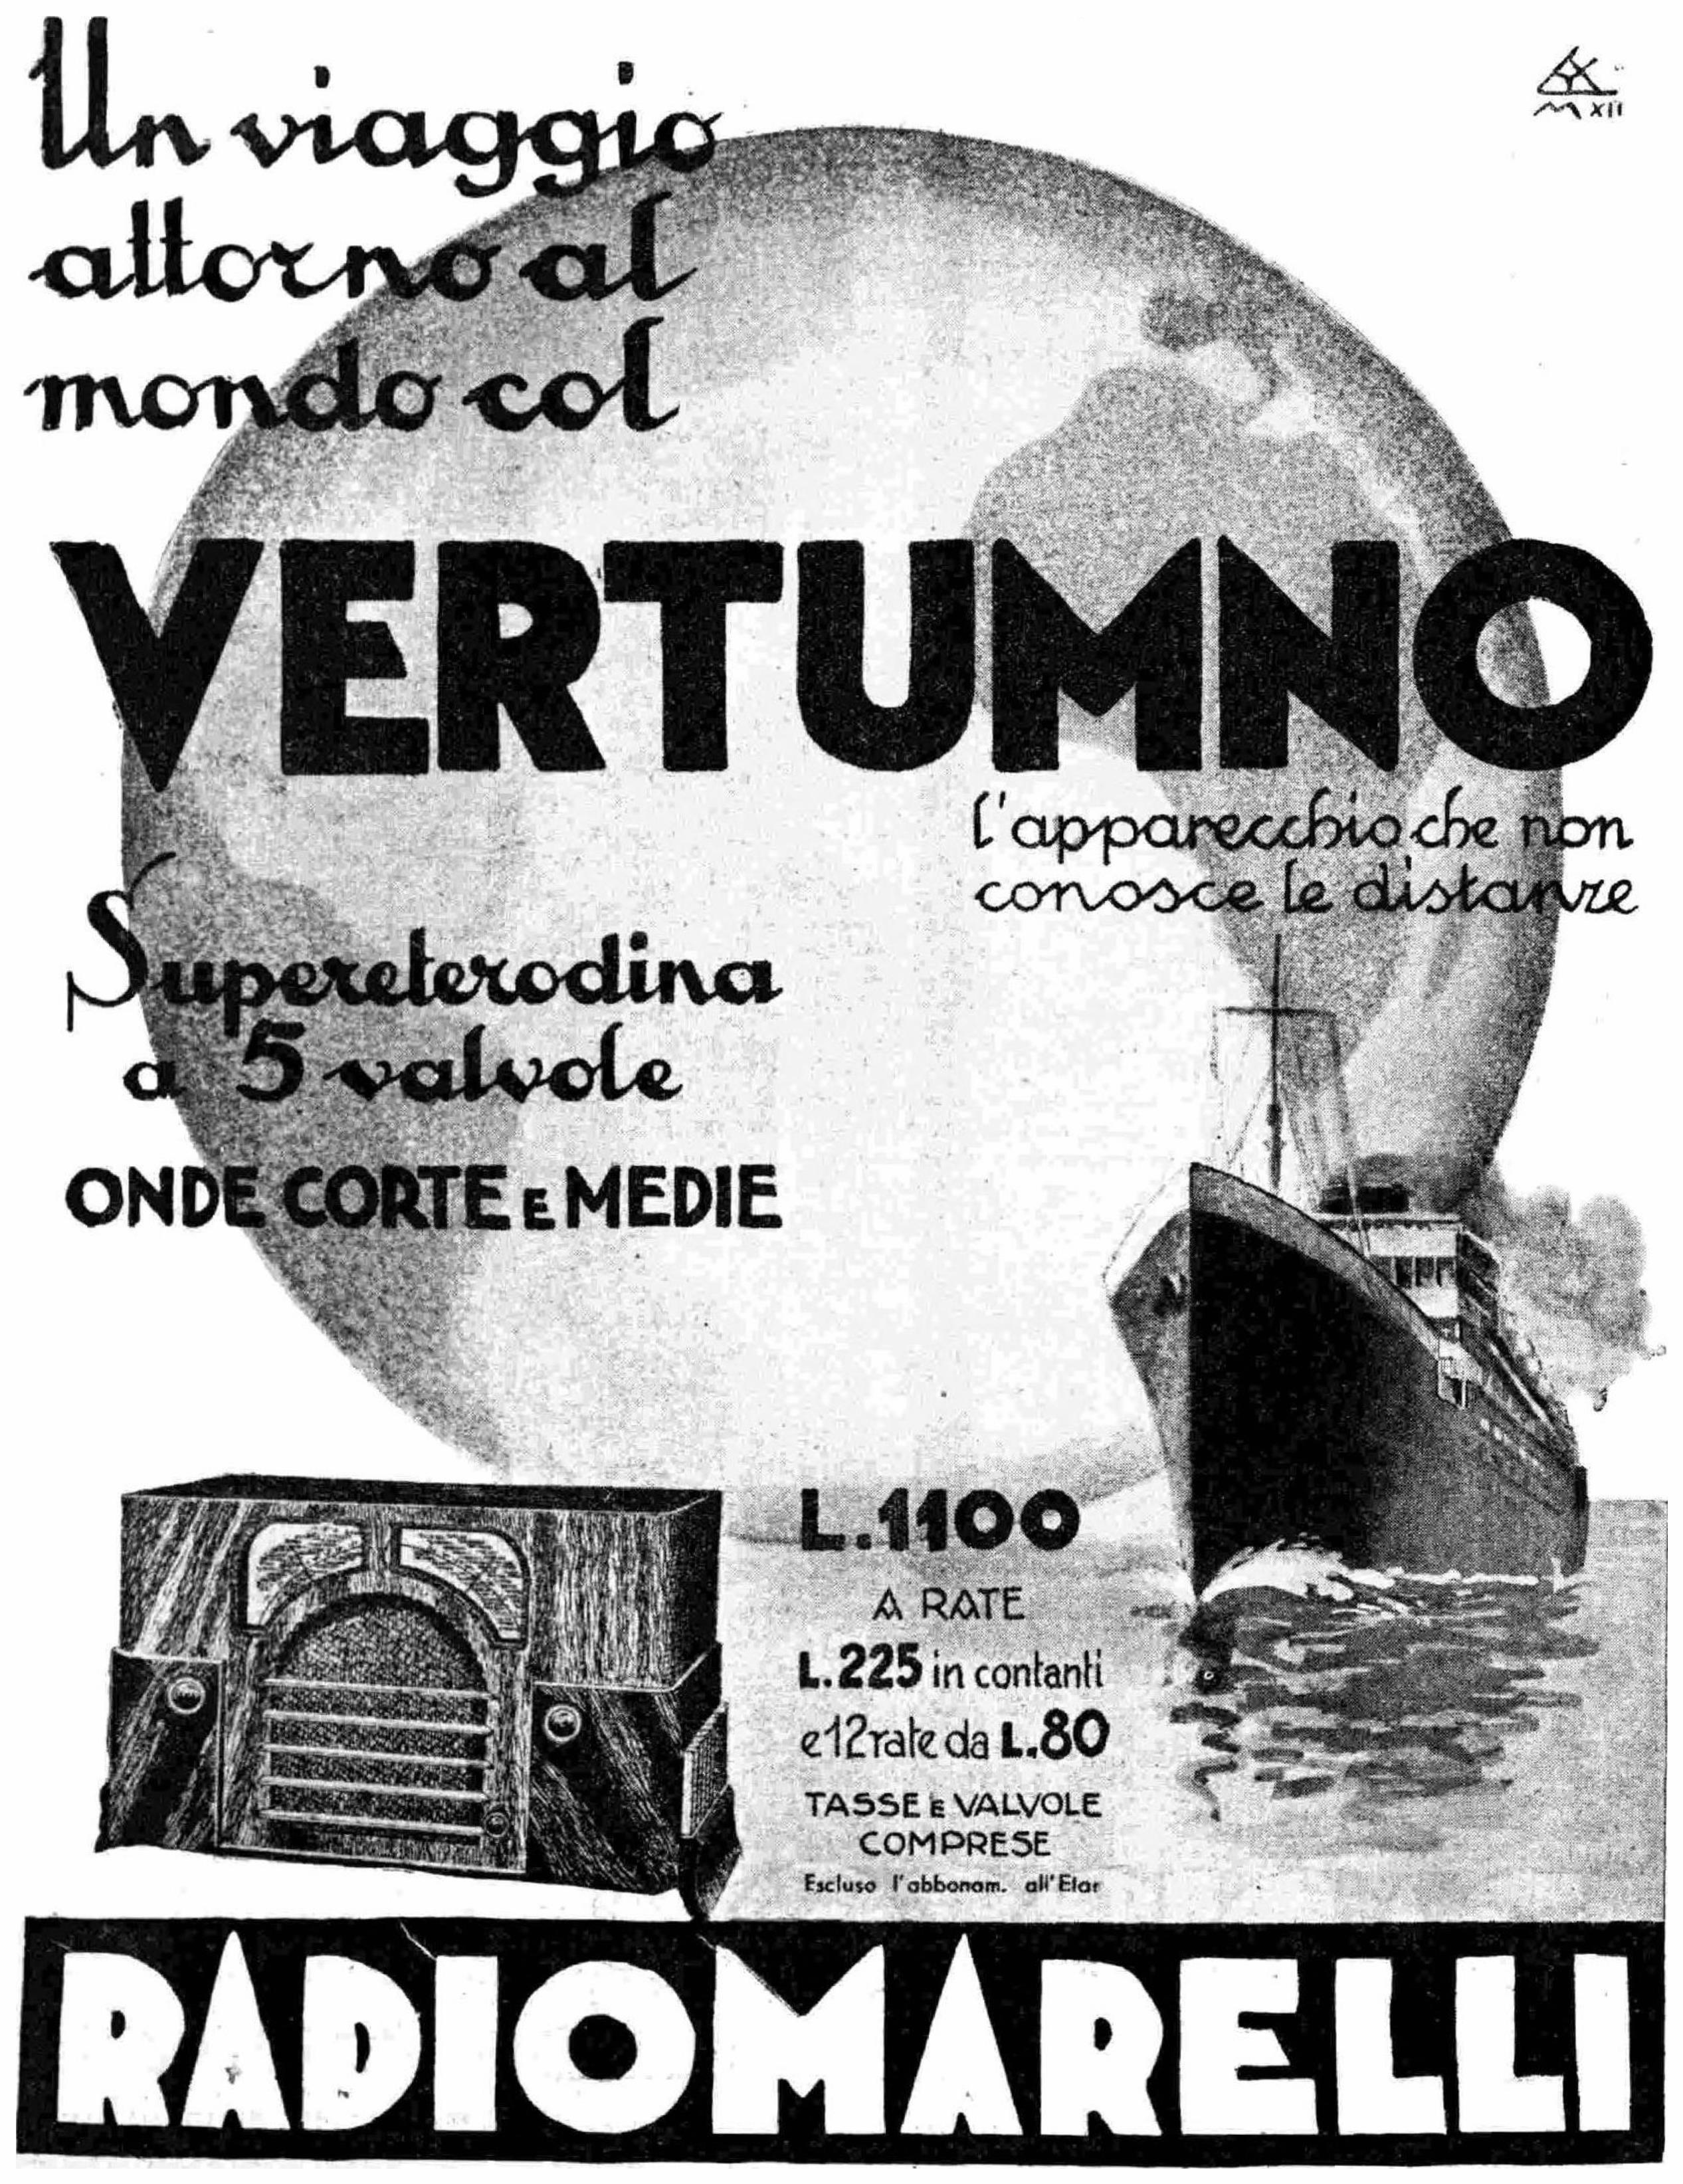 Radiomarelli 1934 15.jpg